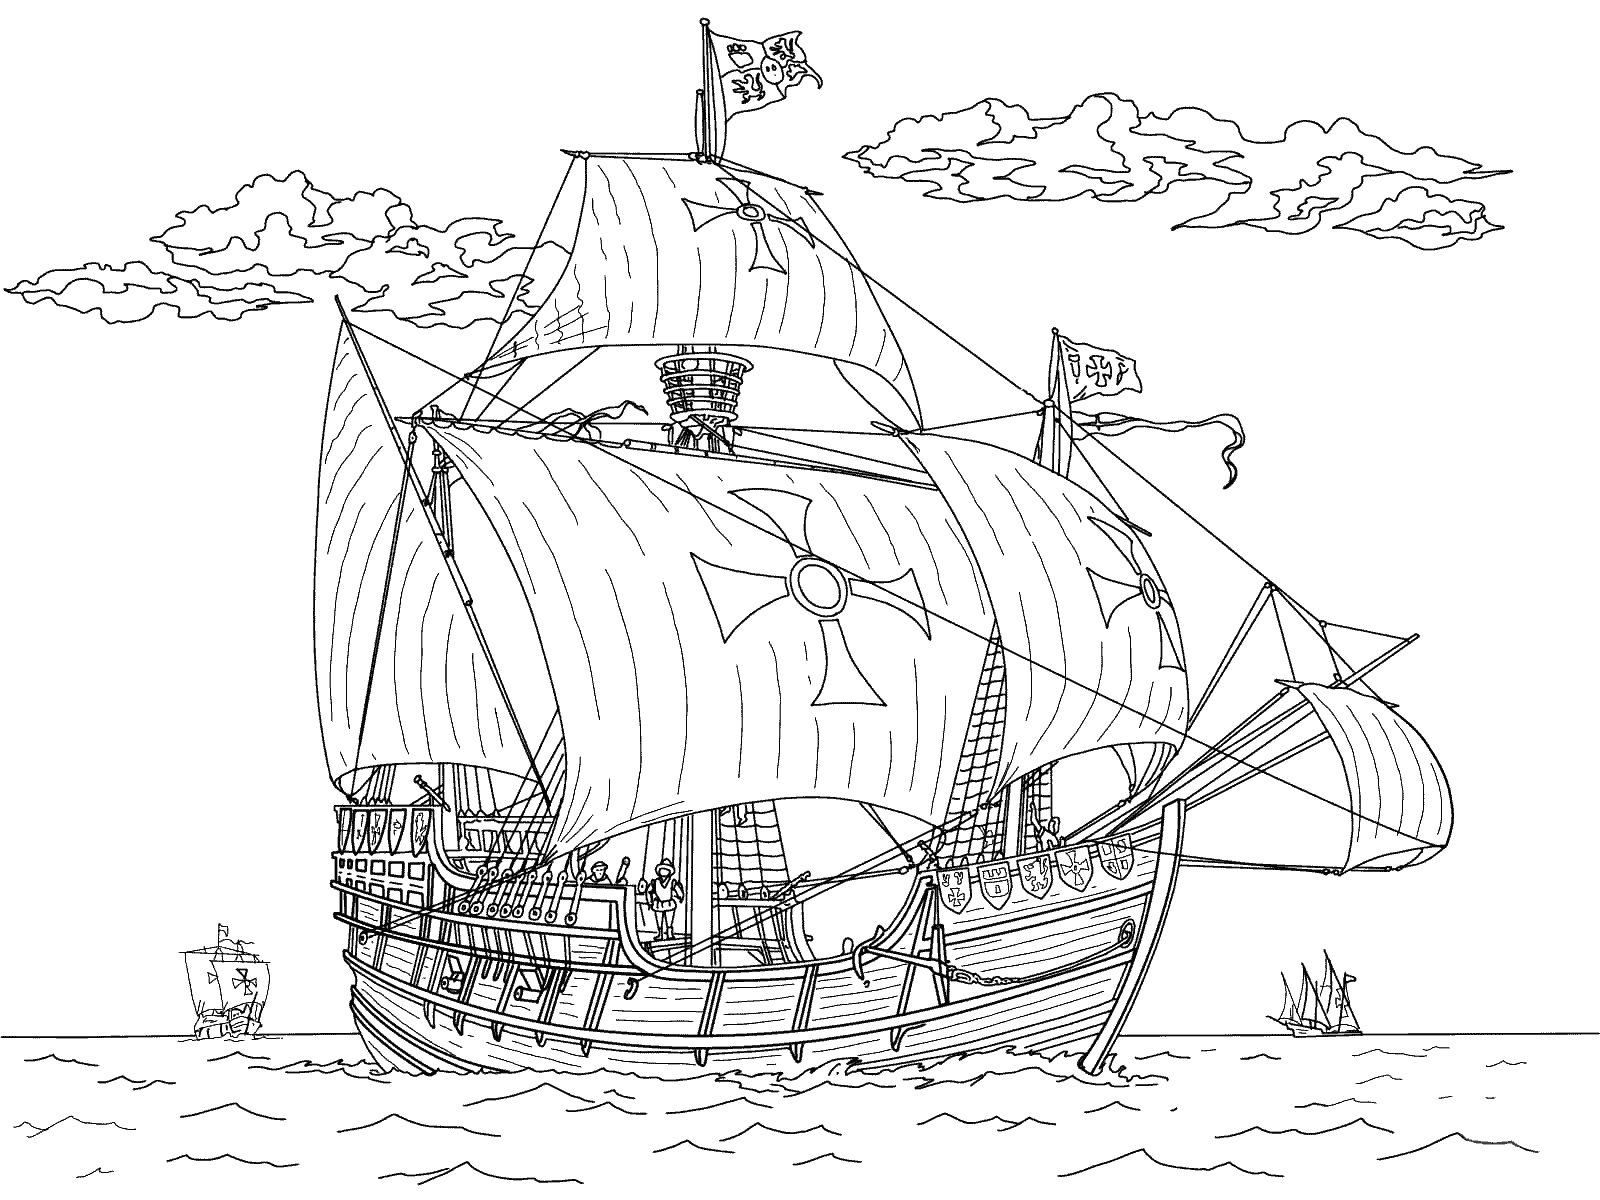 coloring page: Three ships: Niña (smallest), Pinta (middle), Santa Maria (biggest) - all have sails; Niña + Pinta 1 mast, Santa Maria 3 masts.